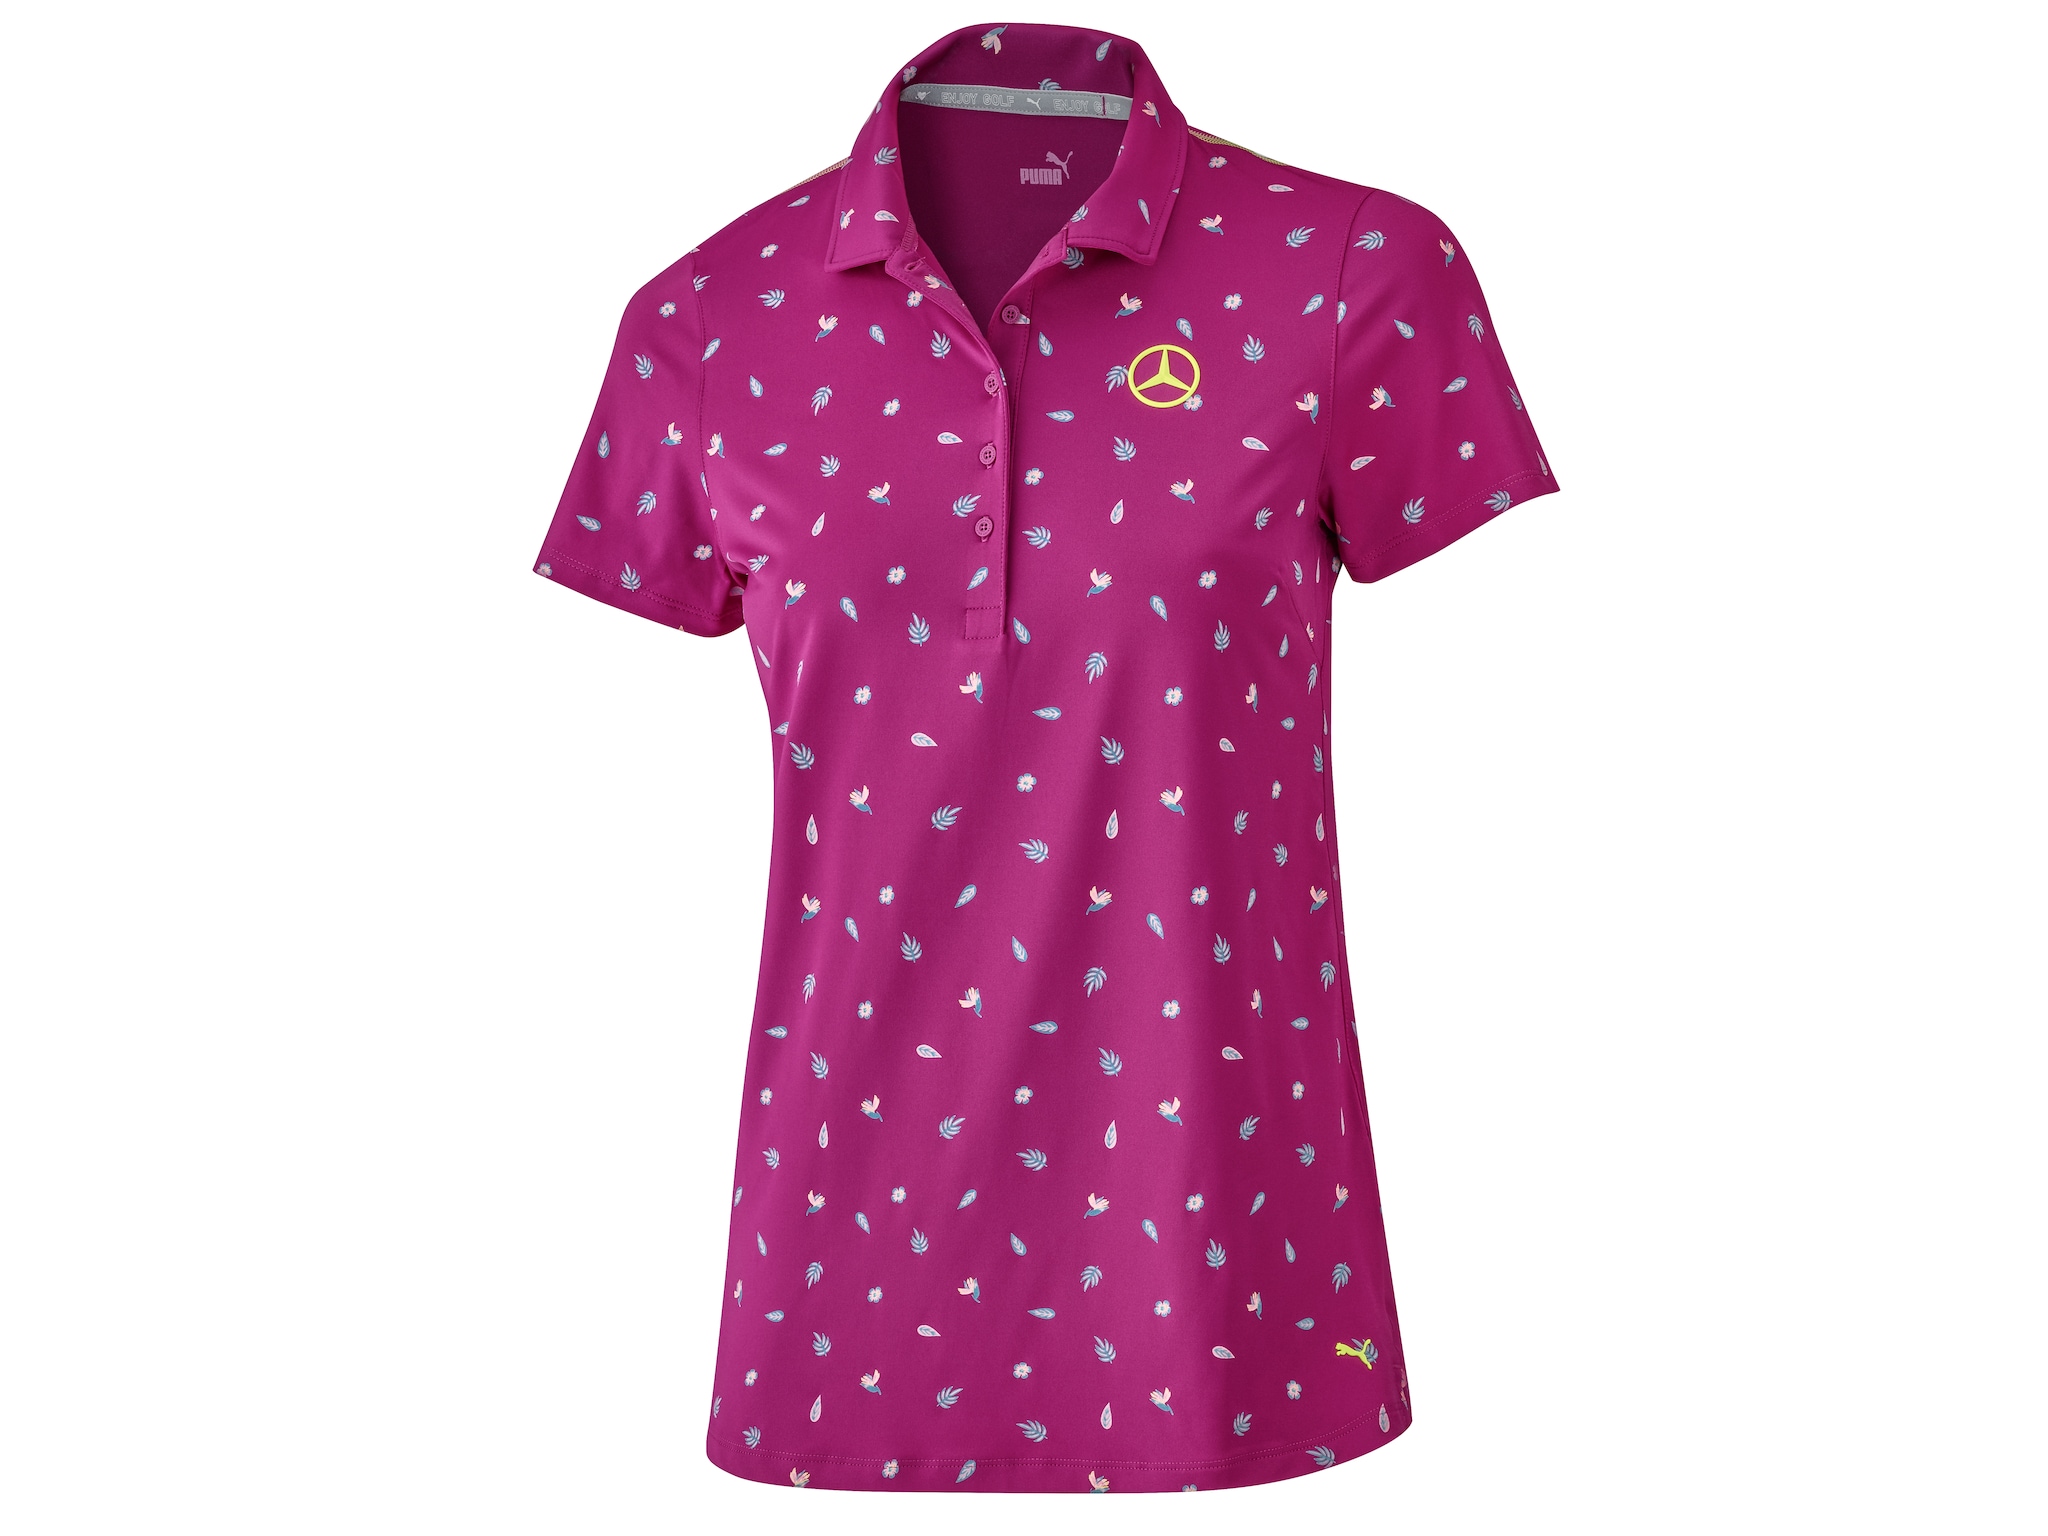 Golf-Poloshirt Damen - fuchsia, XL